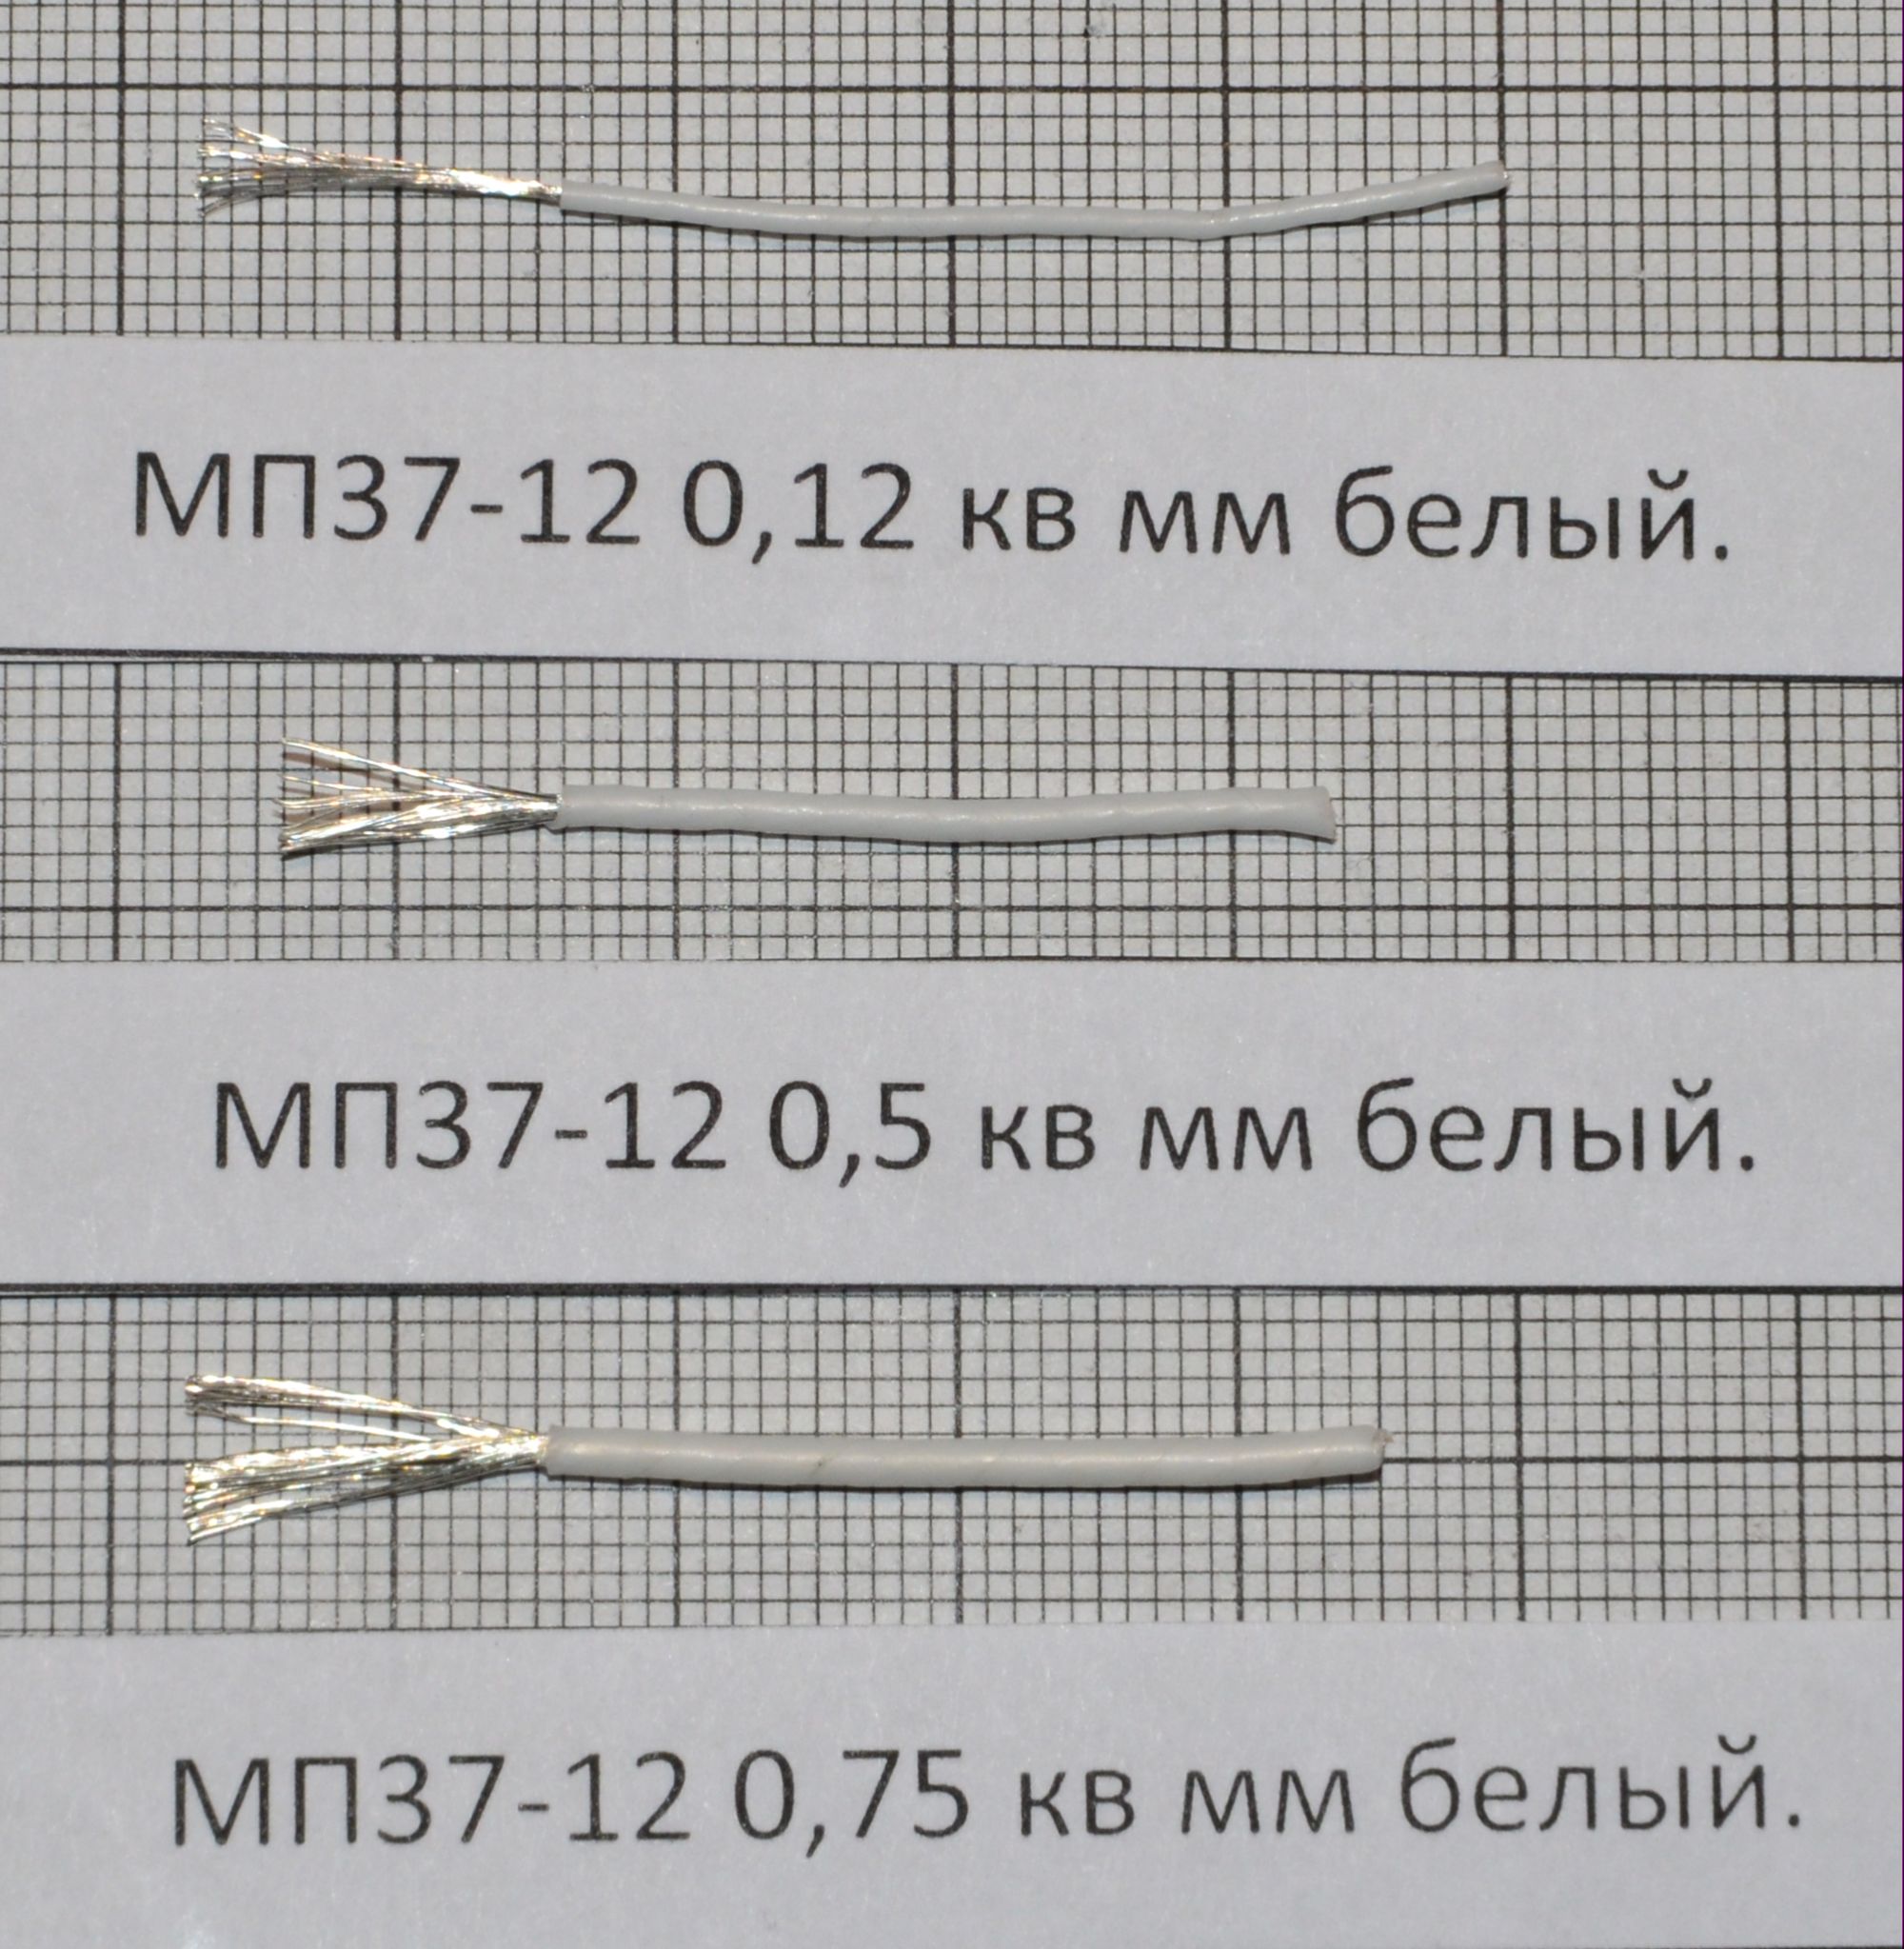 МП-37-С. Провод МС 36-11 0,75. МПО 33-11 1,5. Мп37-12.